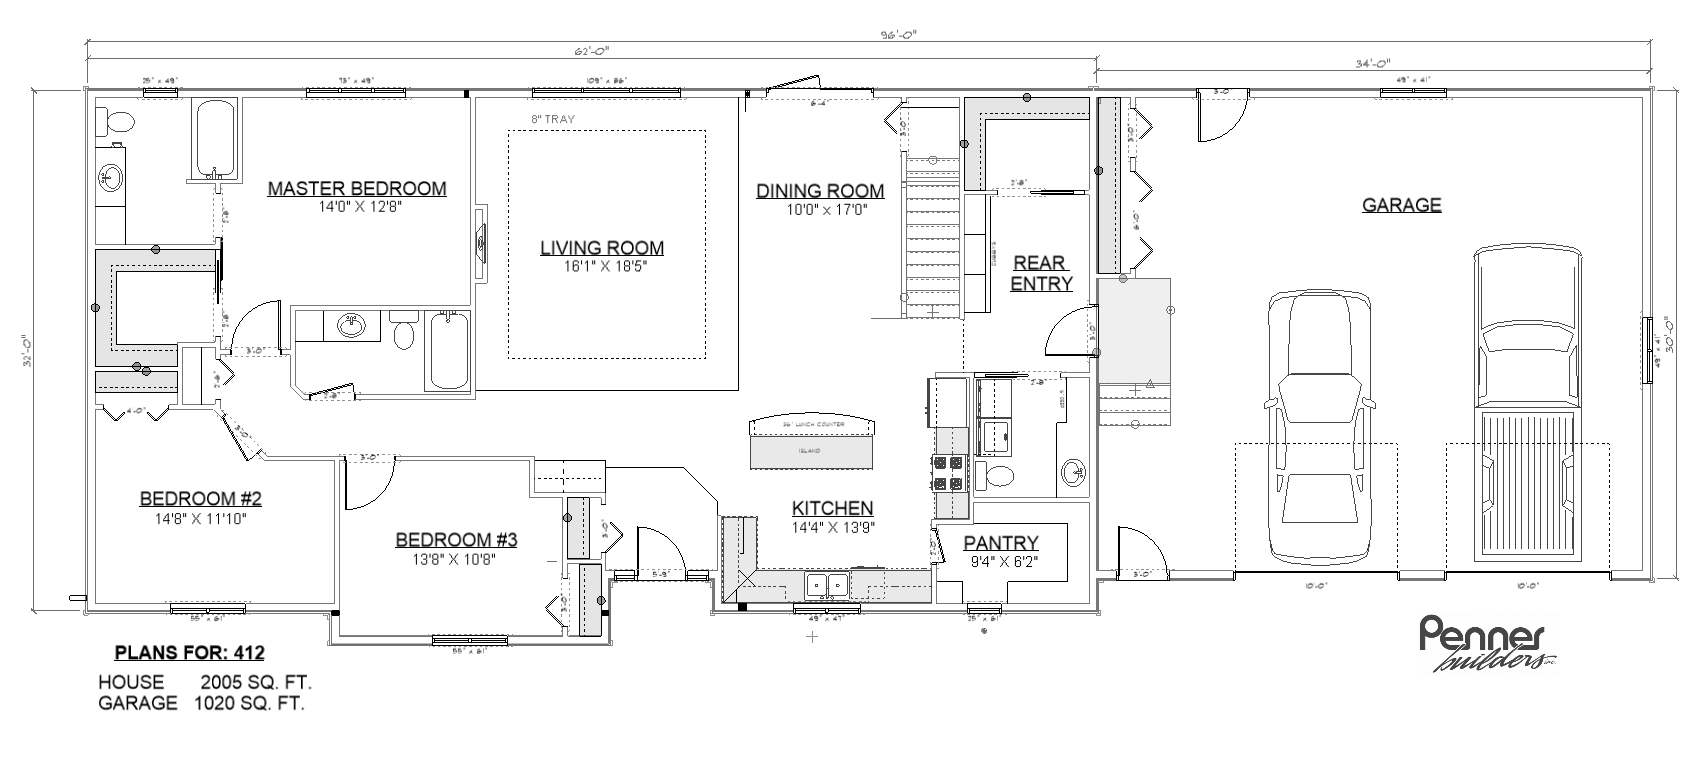 Penner Homes Floor Plan Id: 412